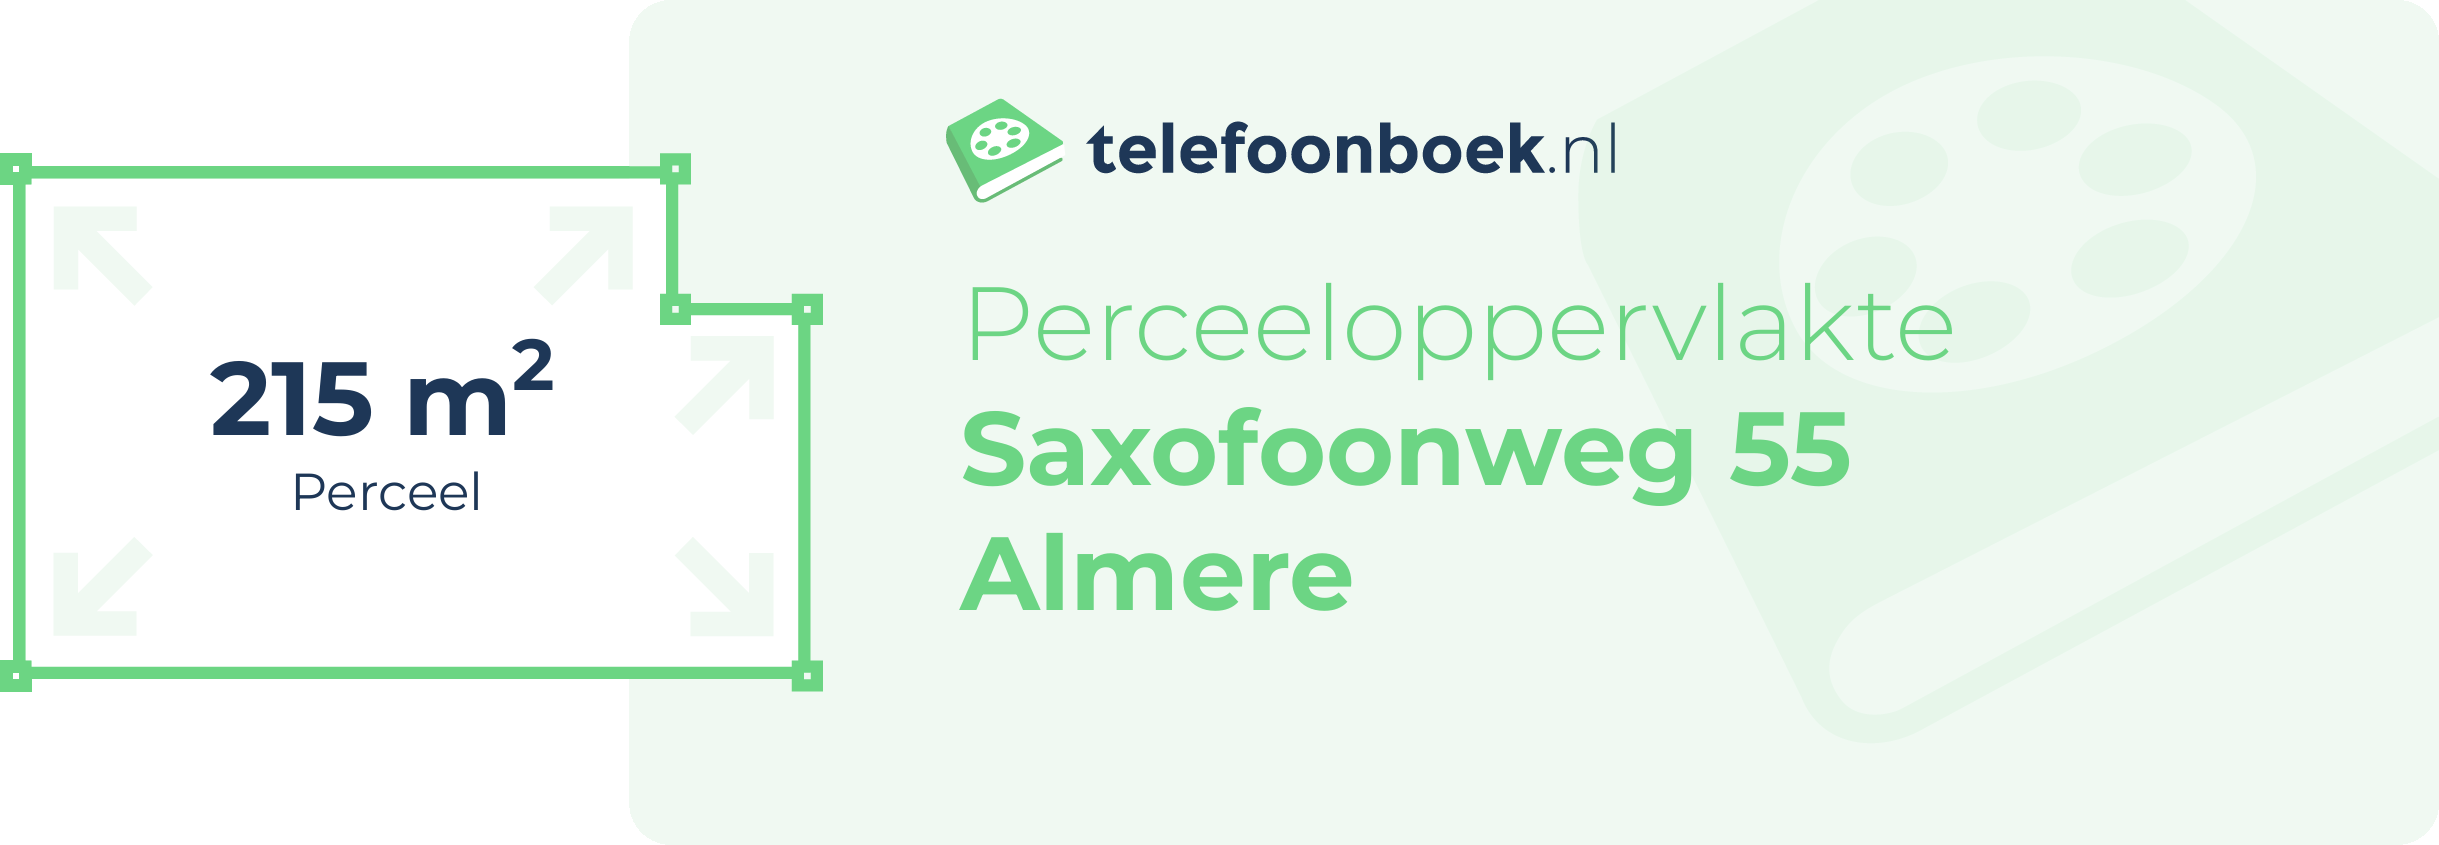 Perceeloppervlakte Saxofoonweg 55 Almere